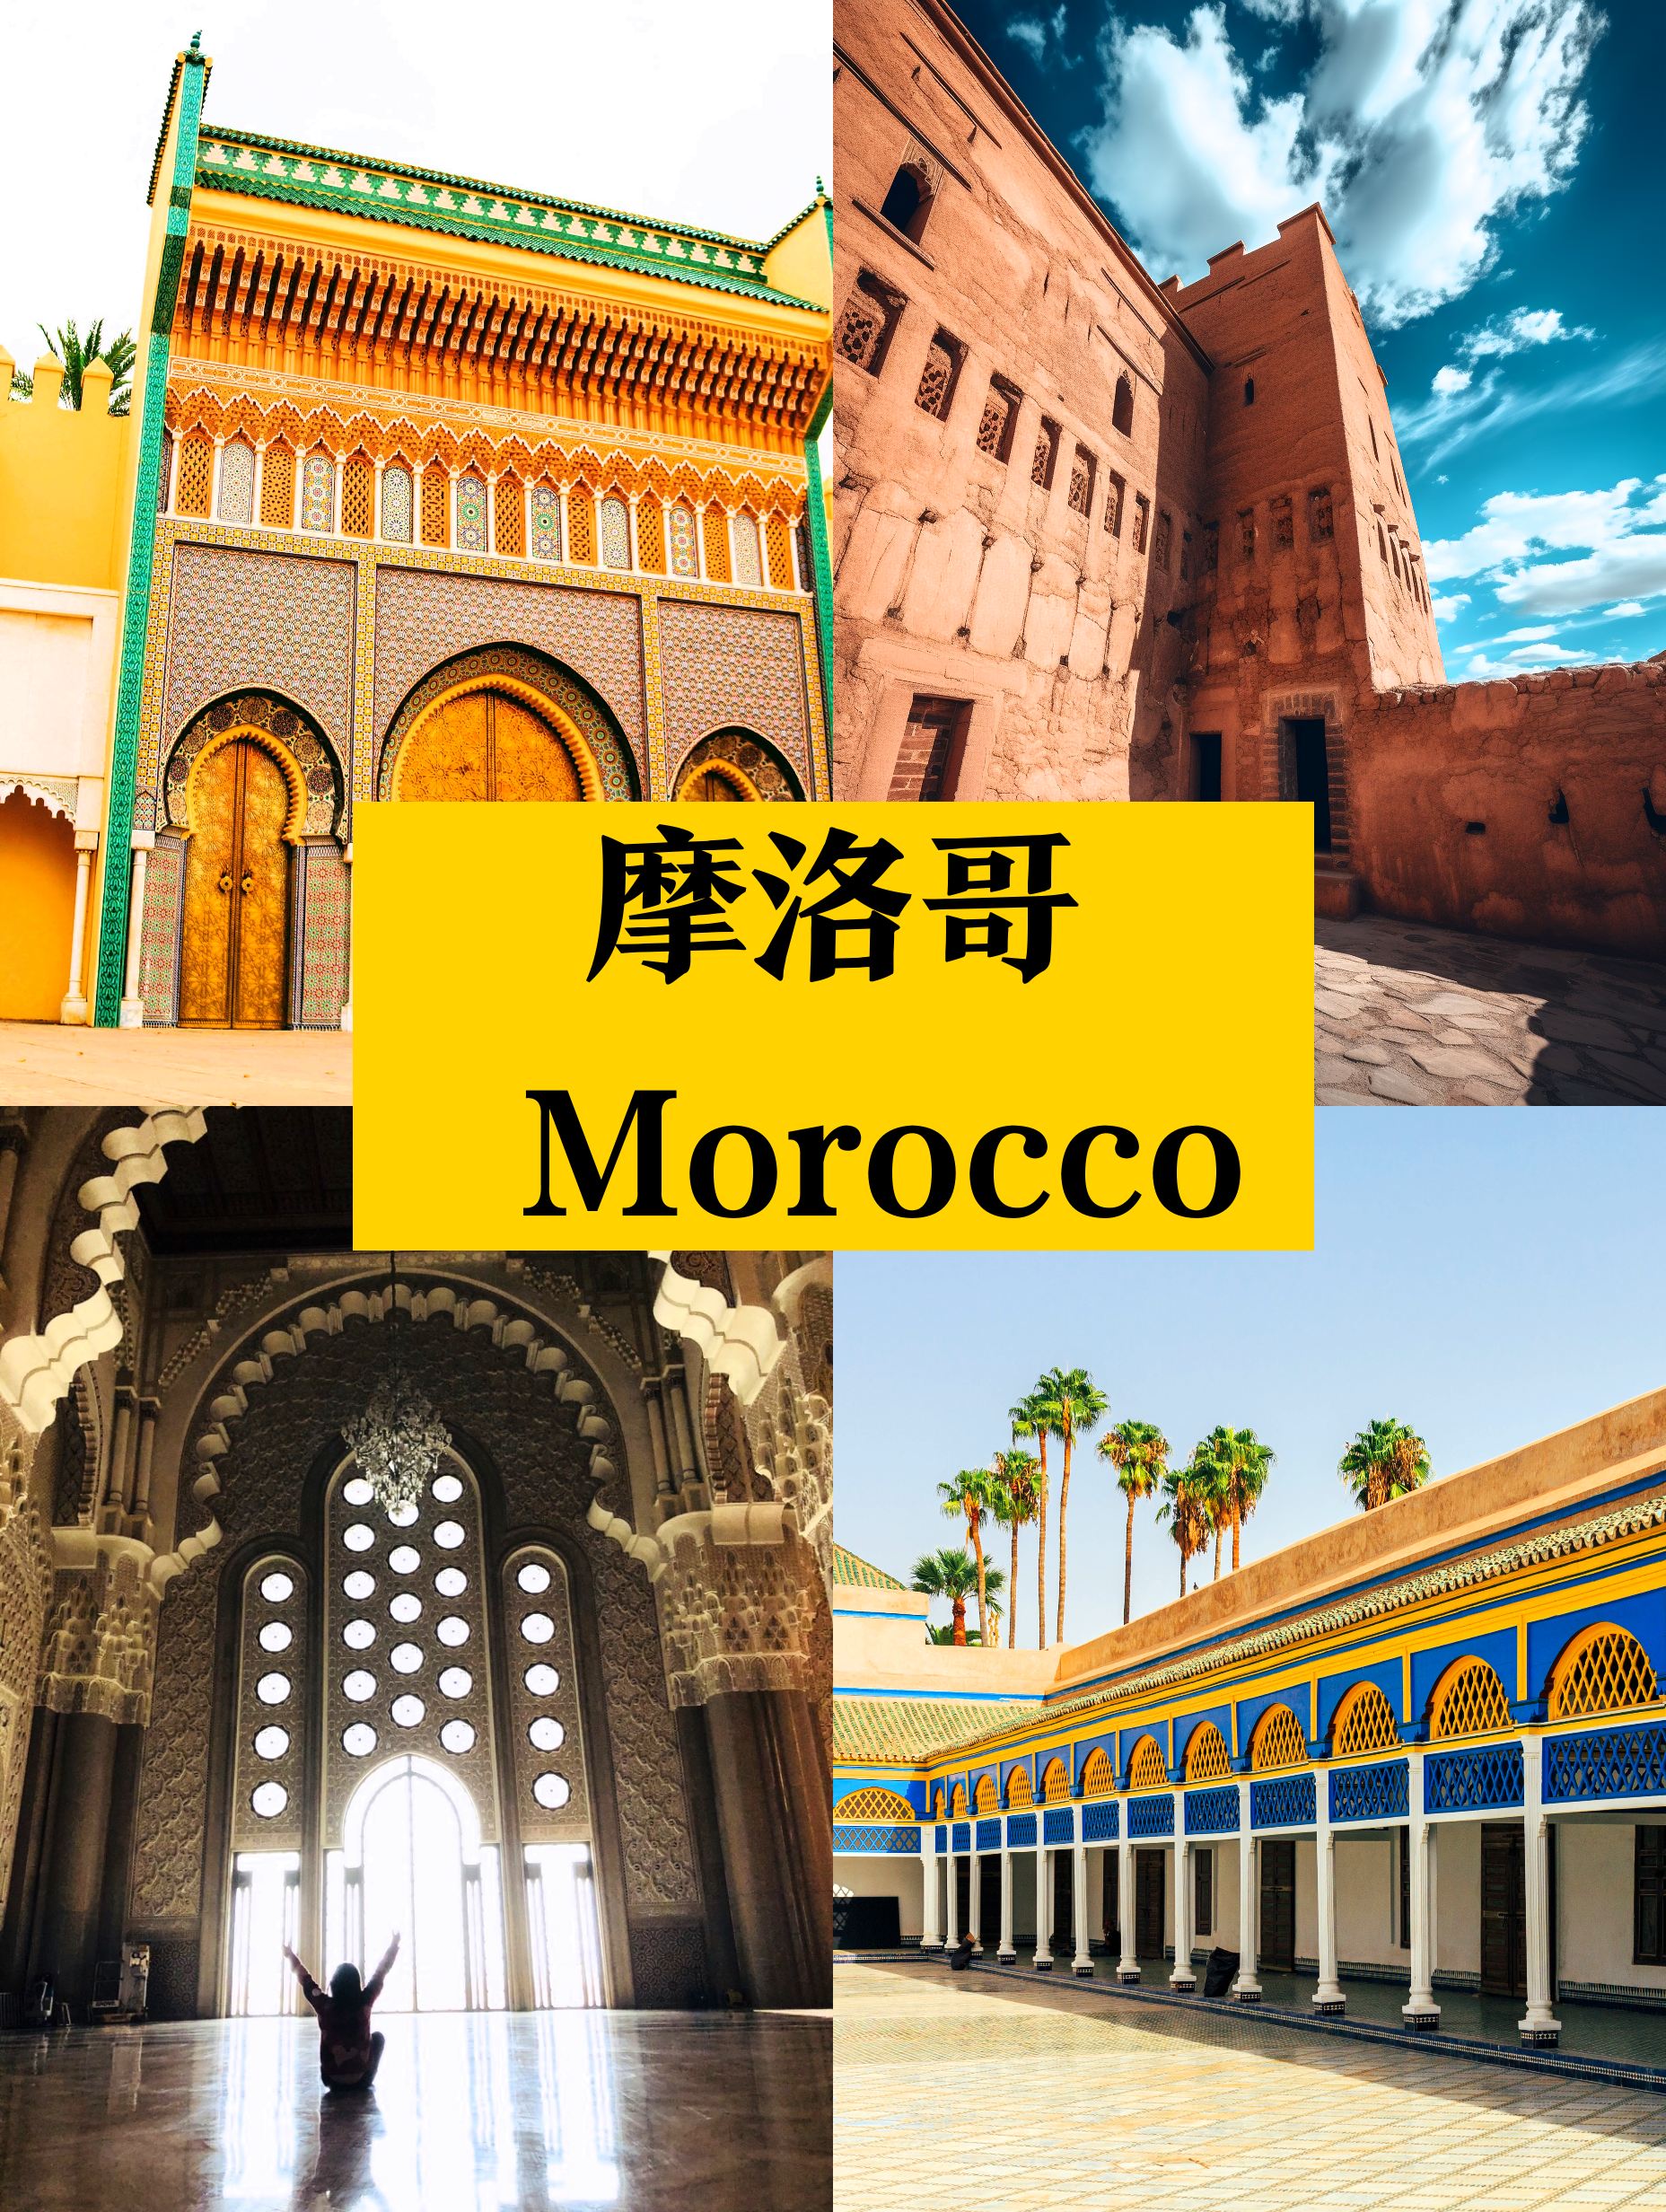 旅行忠告❗[冬天]的摩洛哥❗不去错亿